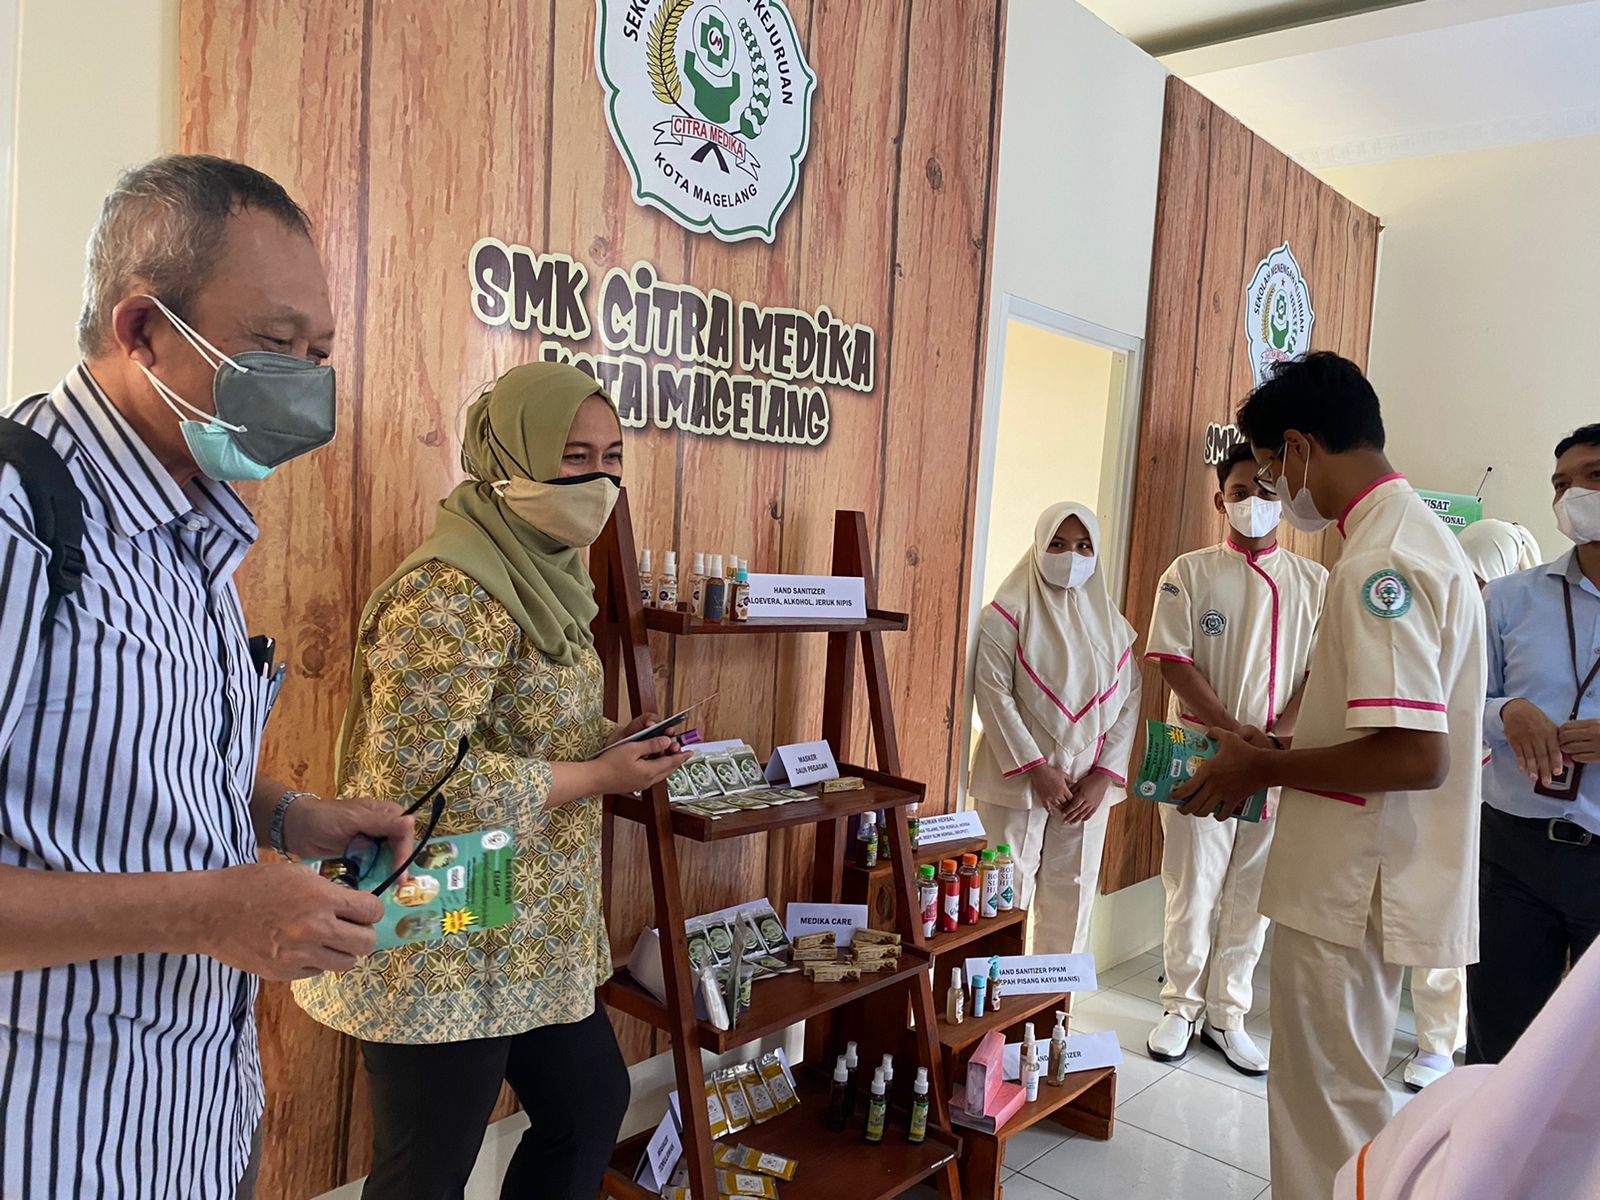 KUNJUNGAN. Tim dari UGM Jogjakarta mengunjungi SMK Citra Medika, sebagai salah satu tugas pendampingan, setelah SMK Citra Medika berhasil meraih SMK Pusat Keunggulan Bidang Pekerja Migran dari pemerintah. (foto : dok/magelang ekspres)